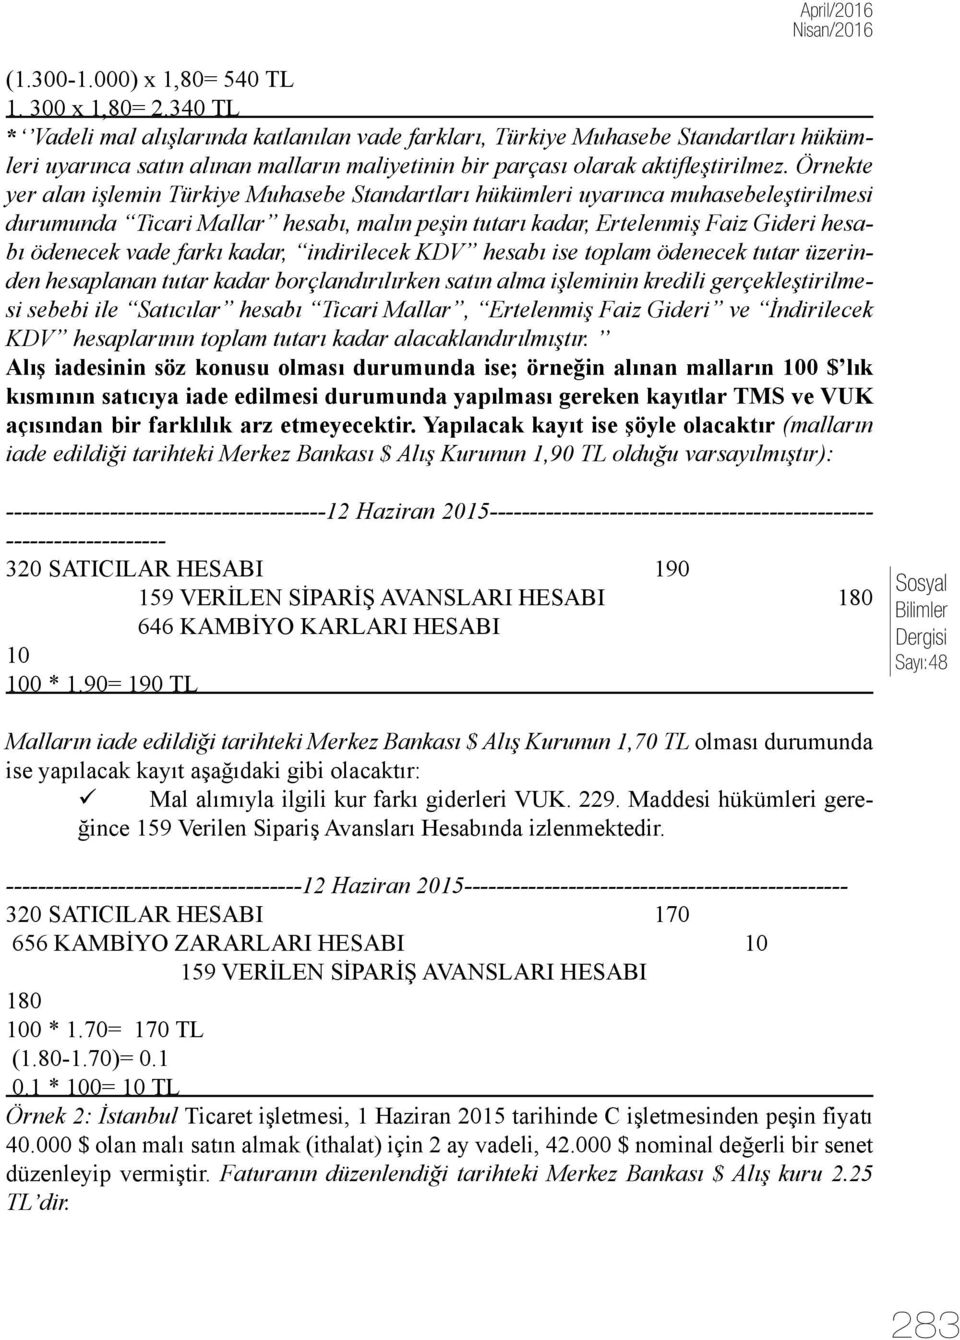 Örnekte yer alan işlemin Türkiye Muhasebe Standartları hükümleri uyarınca muhasebeleştirilmesi durumunda Ticari Mallar hesabı, malın peşin tutarı kadar, Ertelenmiş Faiz Gideri hesabı ödenecek vade